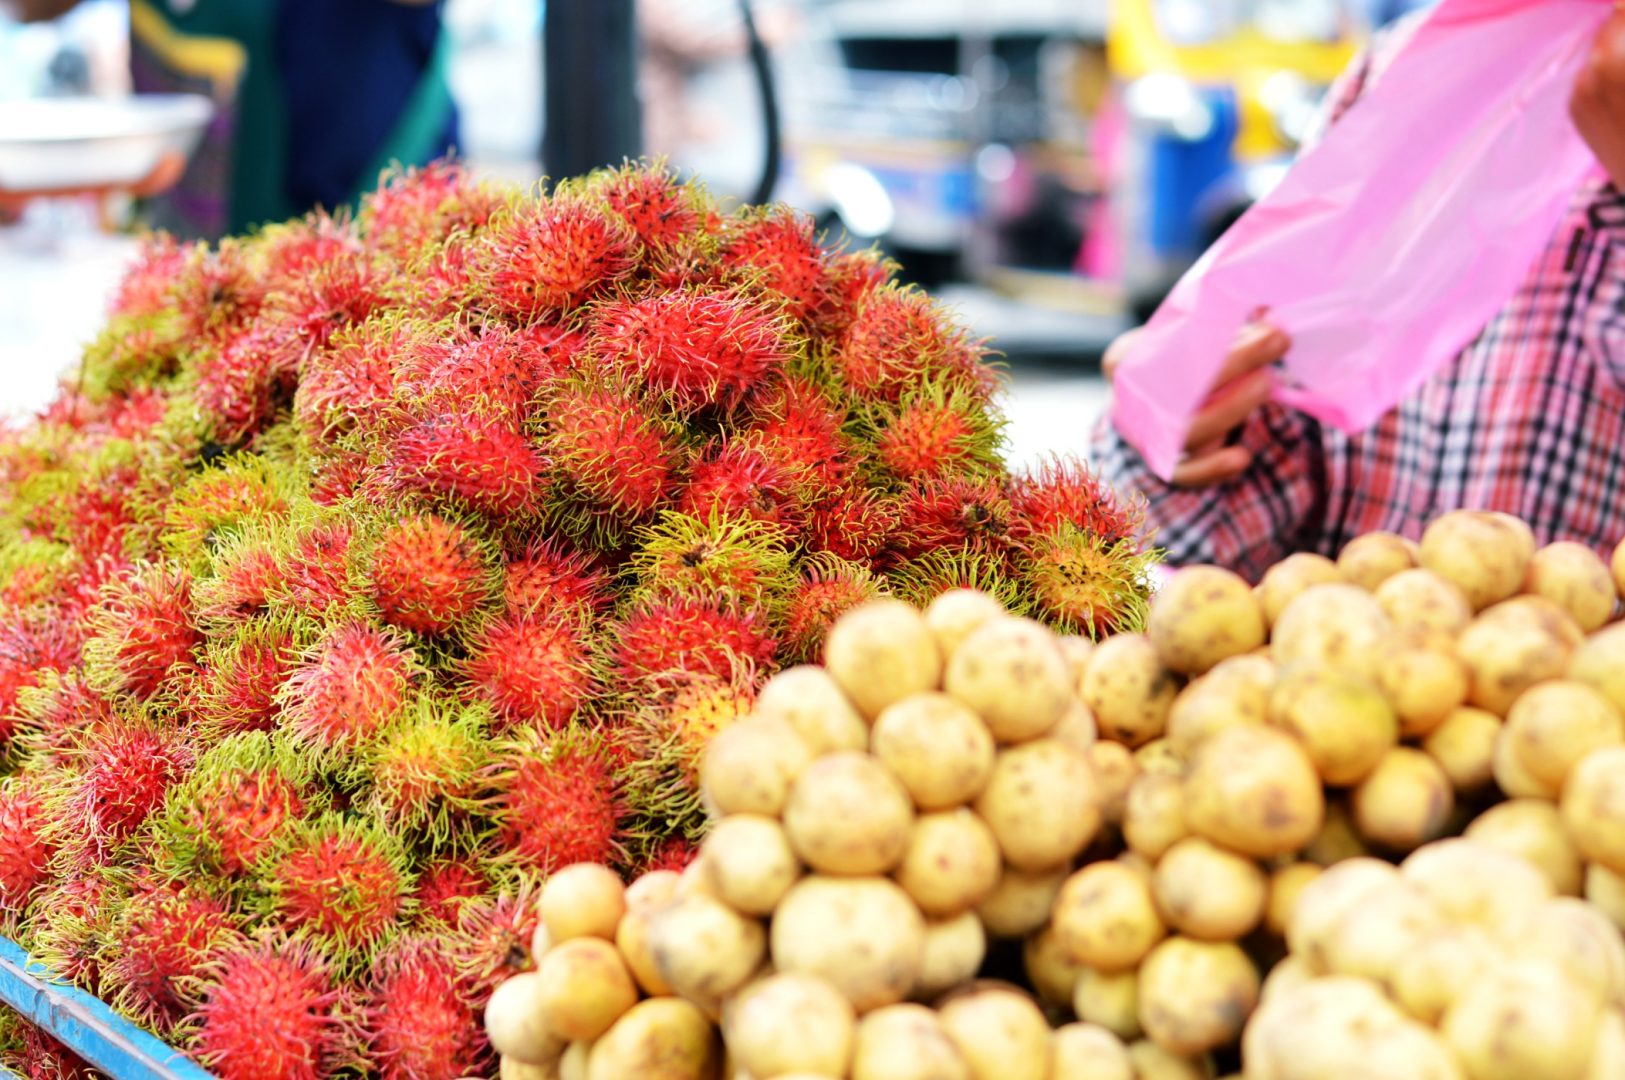 5 exotische Früchte aus Thailand - Rambutan| www.dearlicious.com